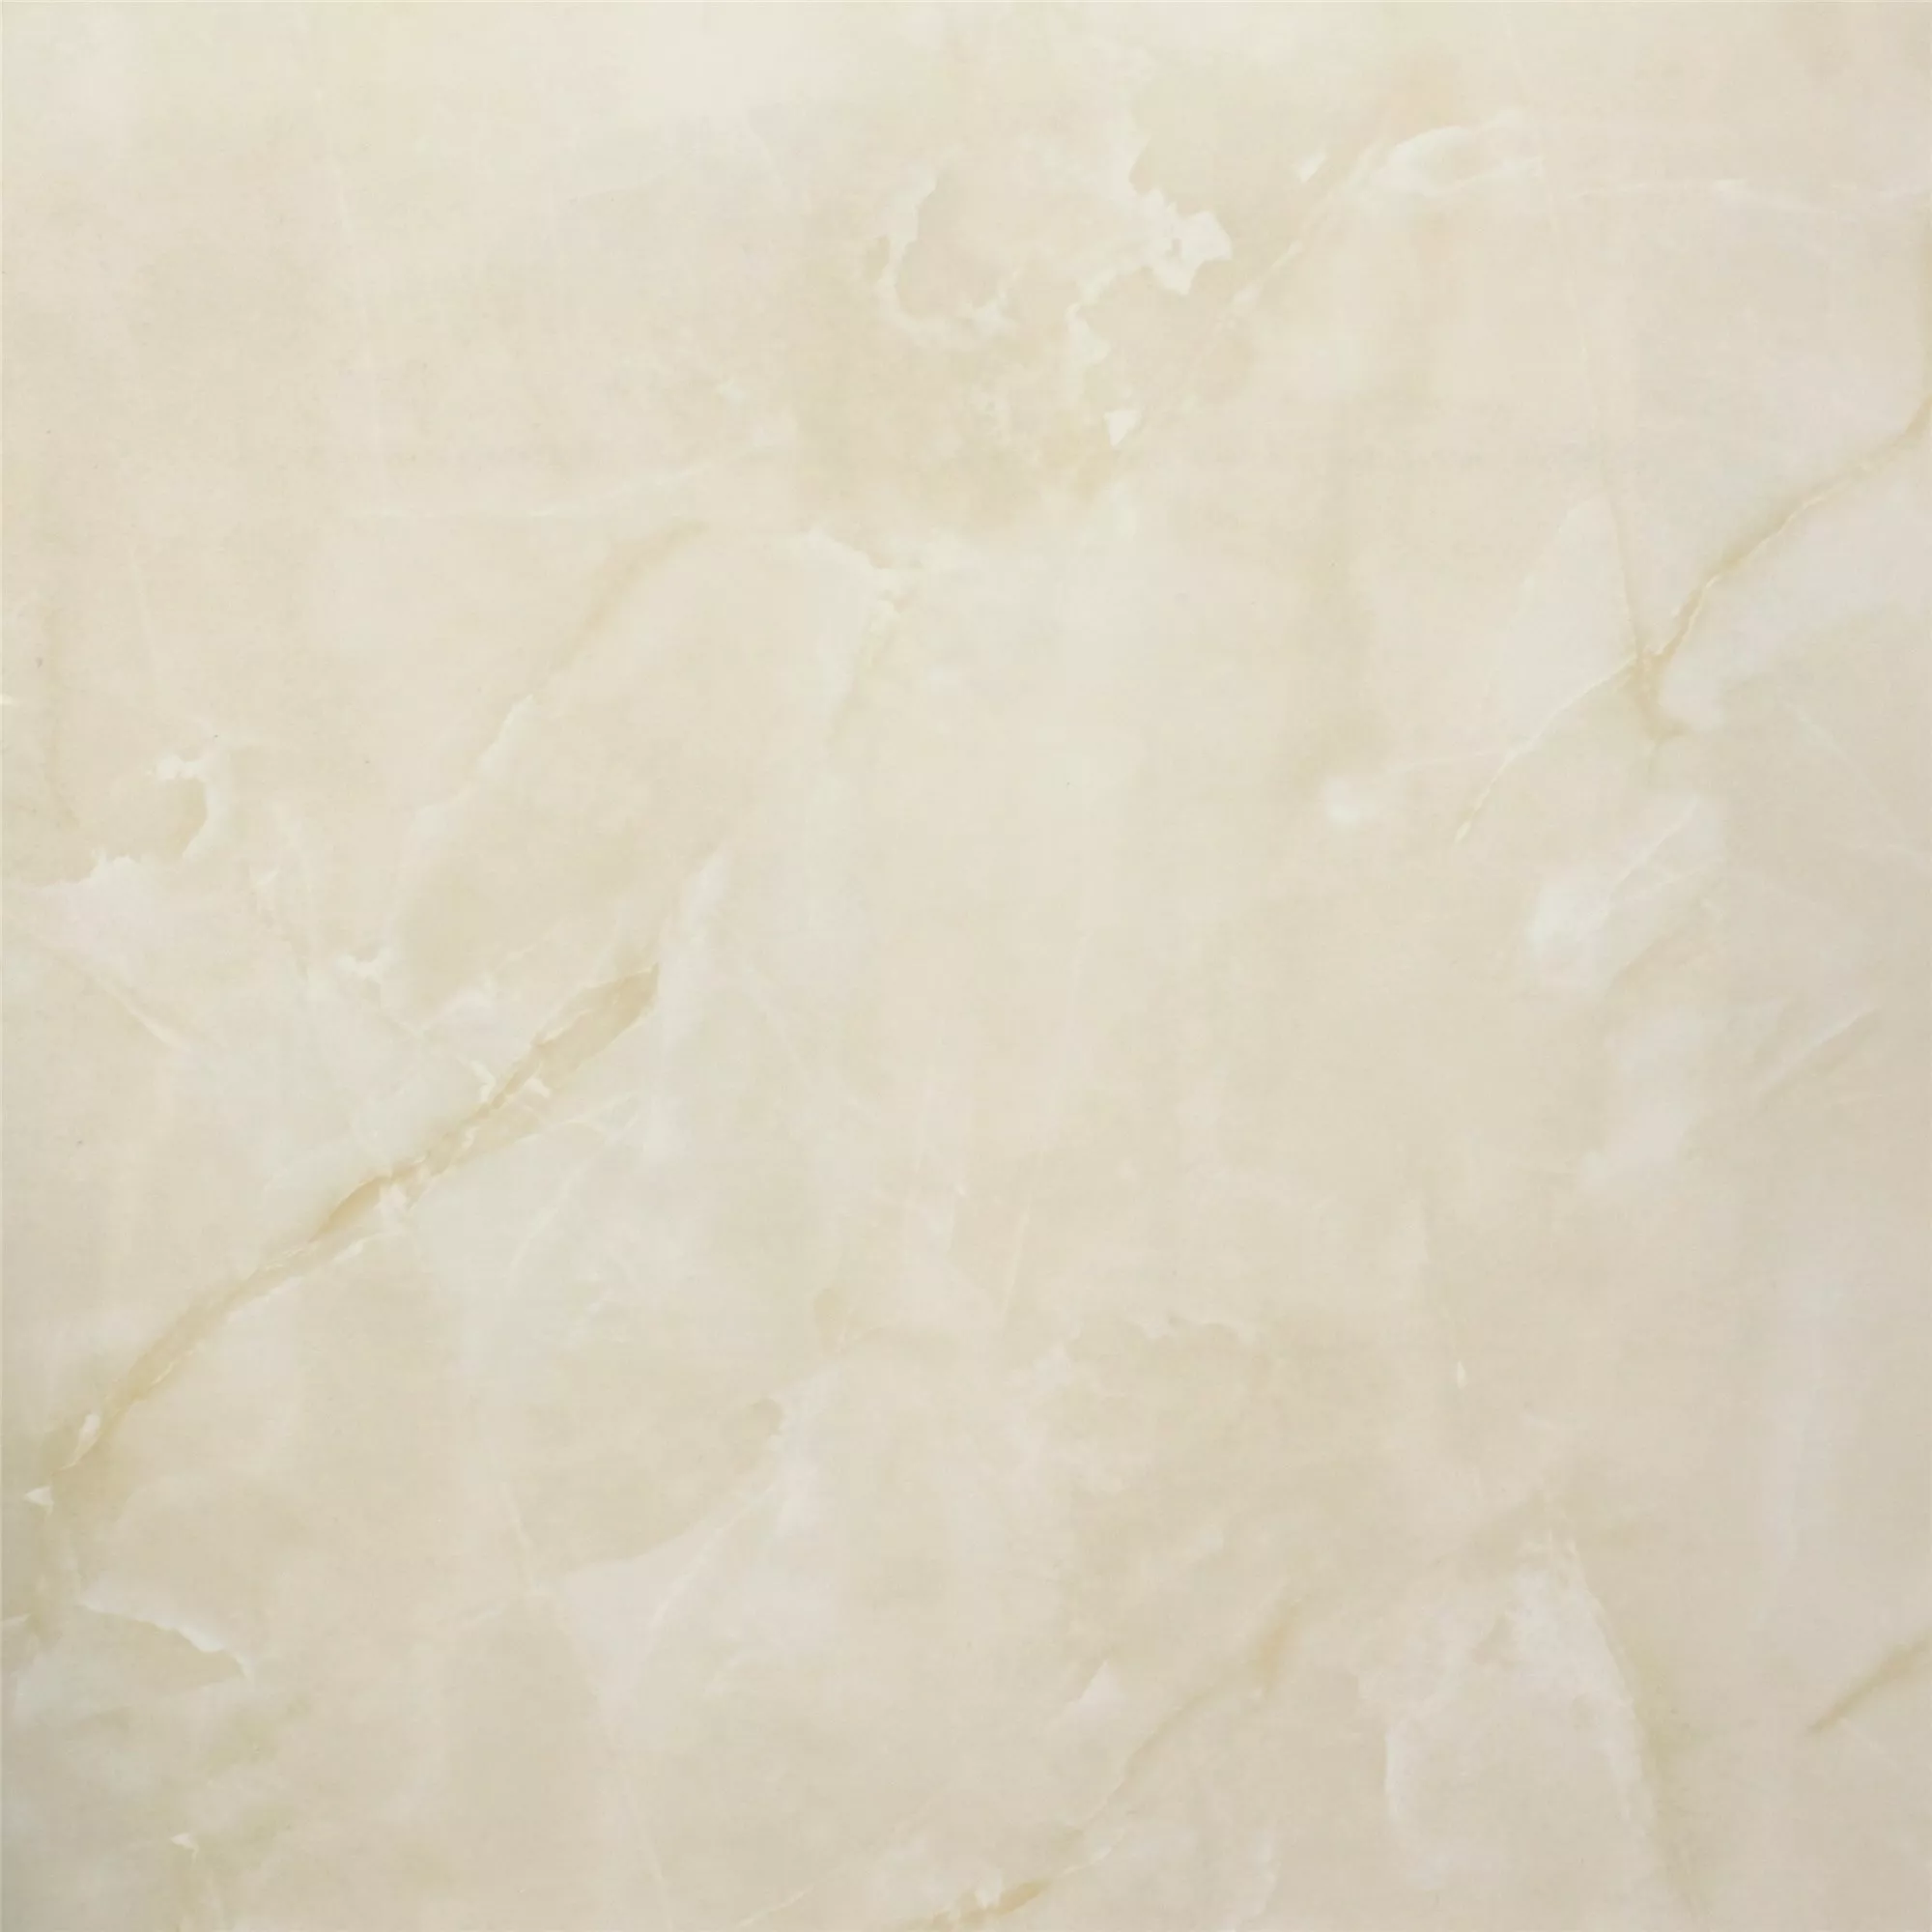 Πρότυπο Πλακάκι Δαπέδου Jupiter Μαρμάρινη Όψη Eλεφαντόδοντο Αμεμπτος 80x80cm